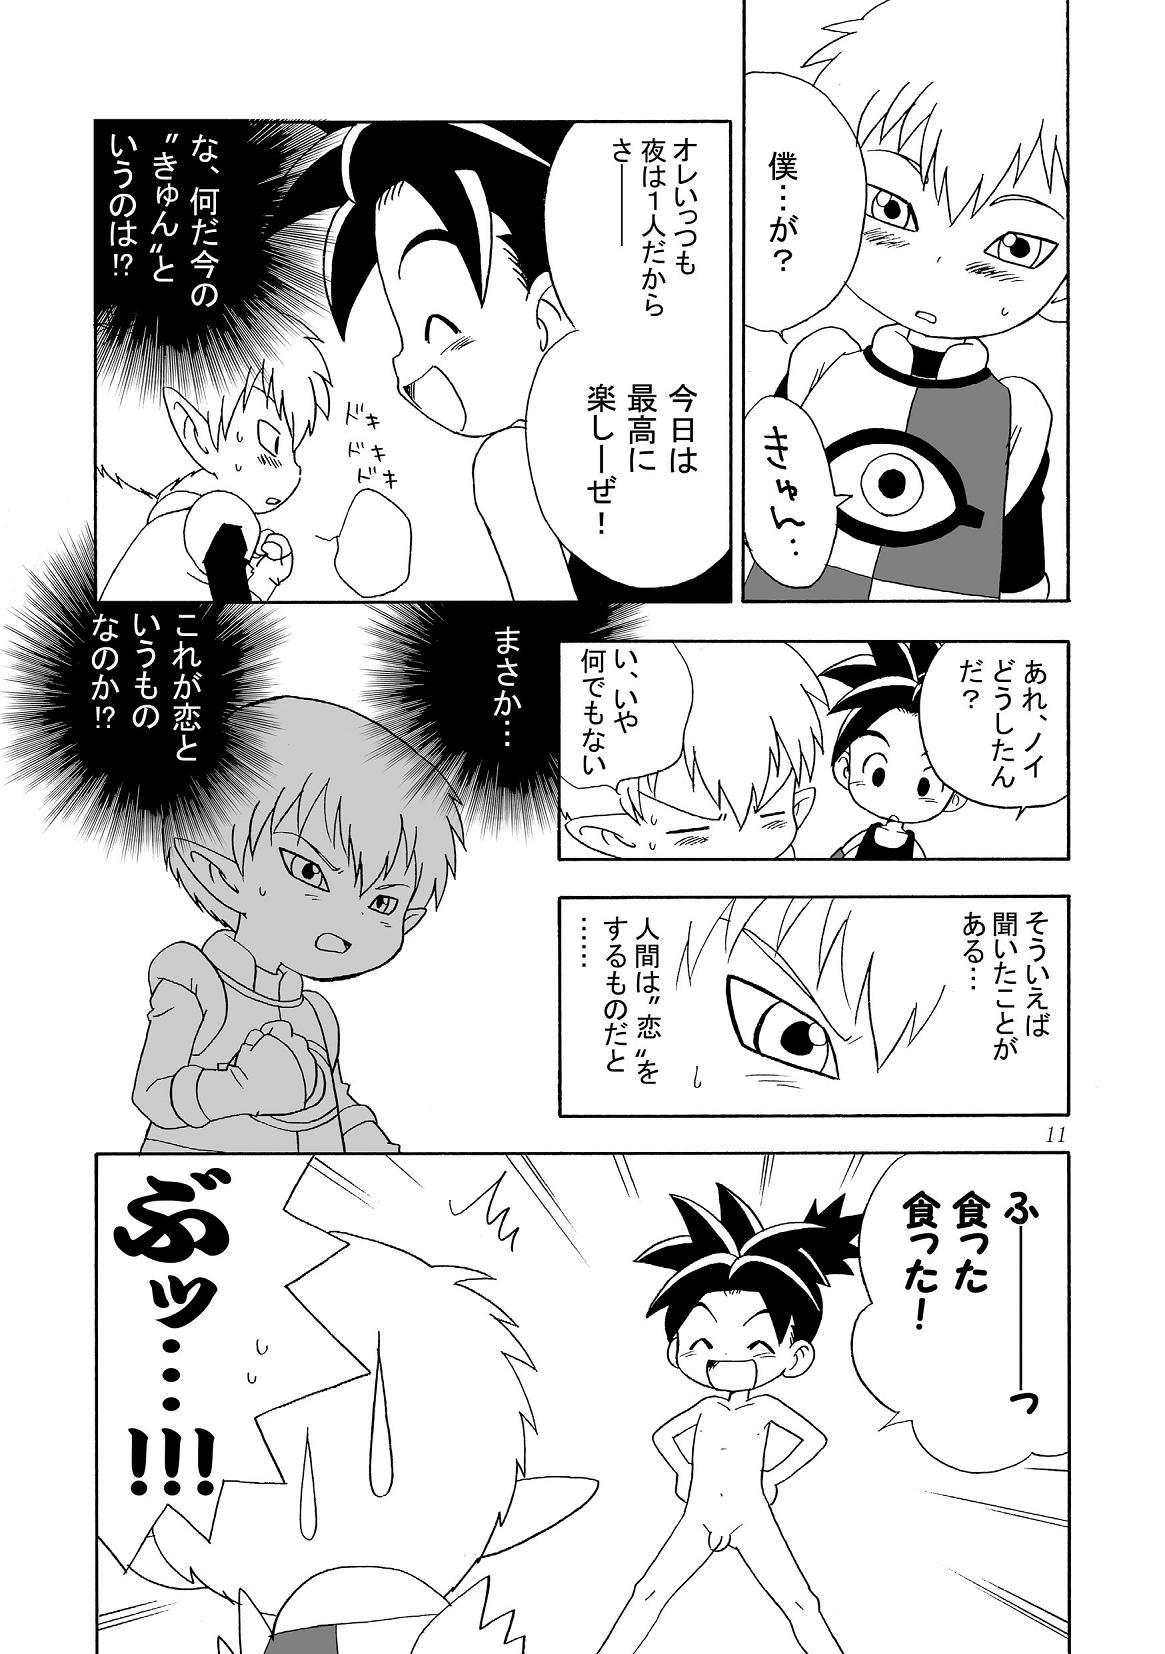 Yumemirukoro Sugitemo - One (Blue Dragon) page 11 full